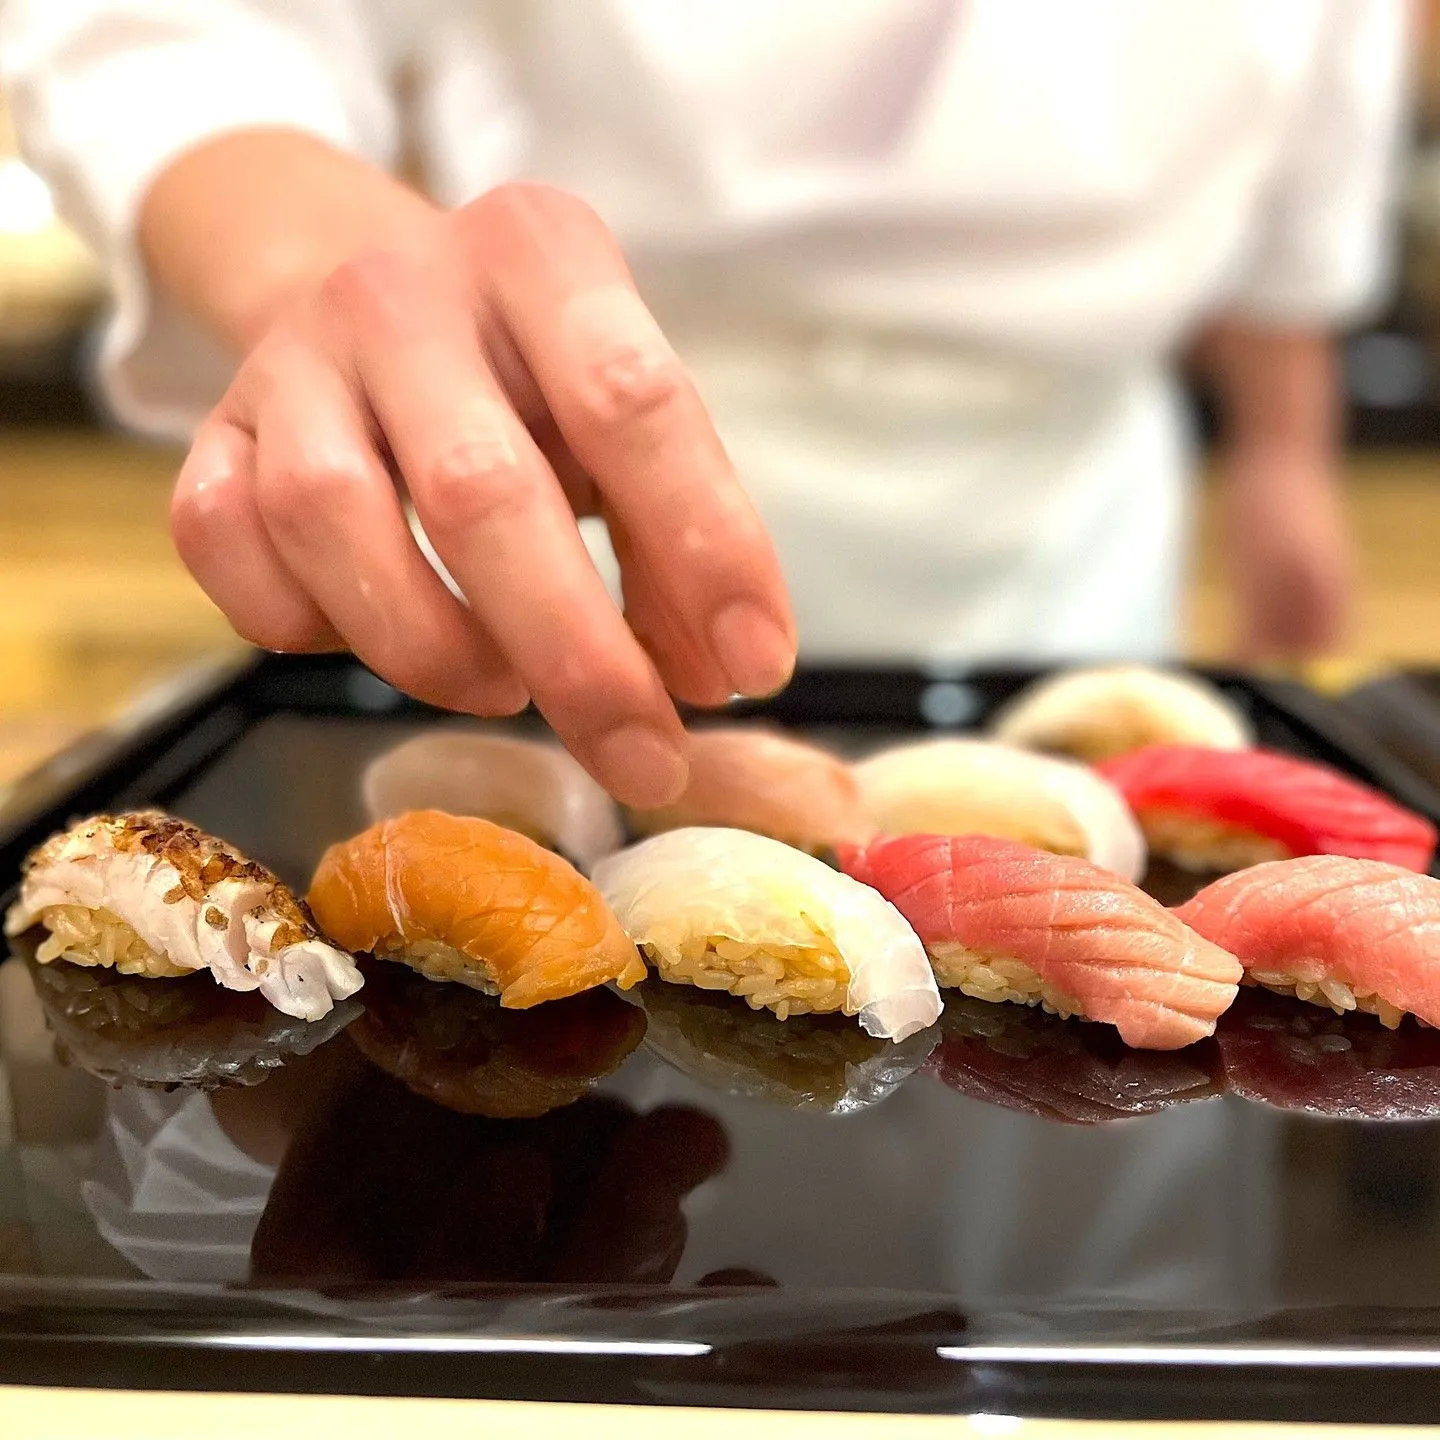 Nhà hàng cao cấp ở thành phố New York tuân theo phương pháp chuẩn bị bữa ăn sushi truyền thống của họ. Khóa học lựa chọn đầu bếp của họ có tên Kiwami có giá khoảng 450 USD (khoảng 37.000 INR) và bao gồm tám món khai vị, chín miếng Nigiri theo mùa (tương tự như sushi nhưng chỉ được làm bằng gạo và cá sống và không có thêm hương liệu nào khác) và Tamago tự làm (Nhật Bản ). trứng tráng), súp miso (súp đậu) và món tráng miệng.